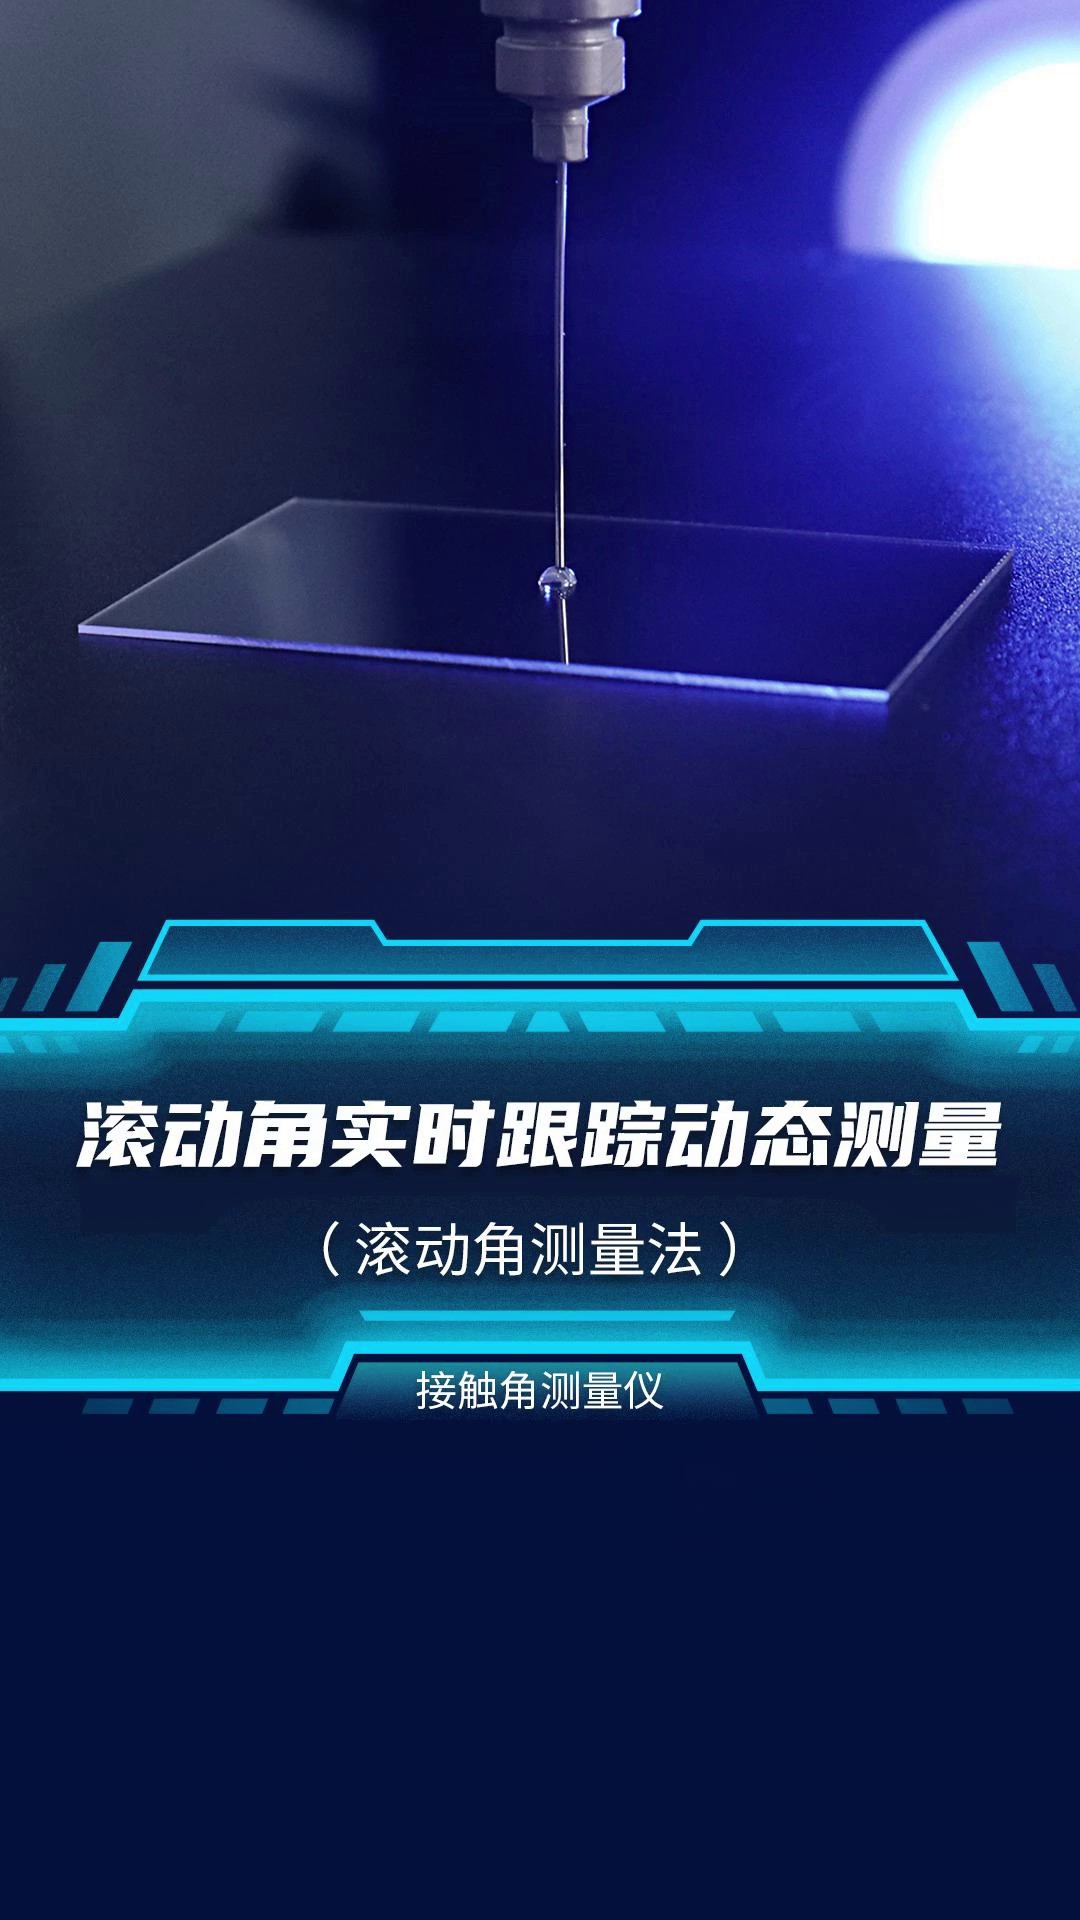 上海国产接触角测量仪欢迎选购,接触角测量仪